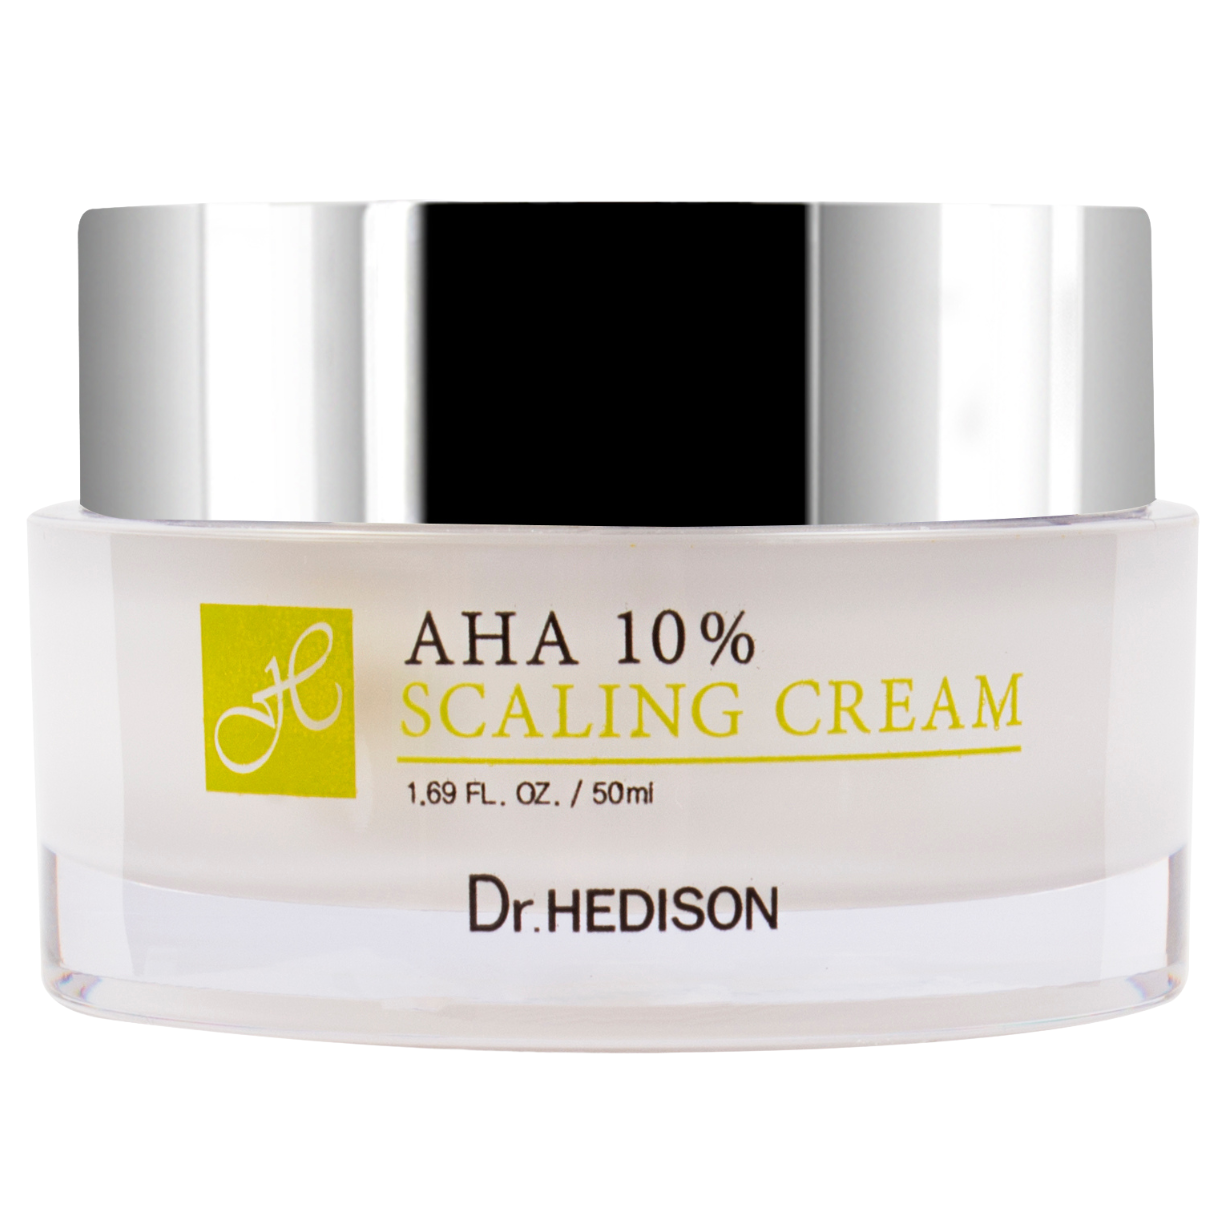 Крем для жирной и чувствительной кожи ага 10% Dr.Hedison Aha, 50 мл крем для эксфолиации и пилинга plazan крем пилинг с 10% гликолевой кислотой